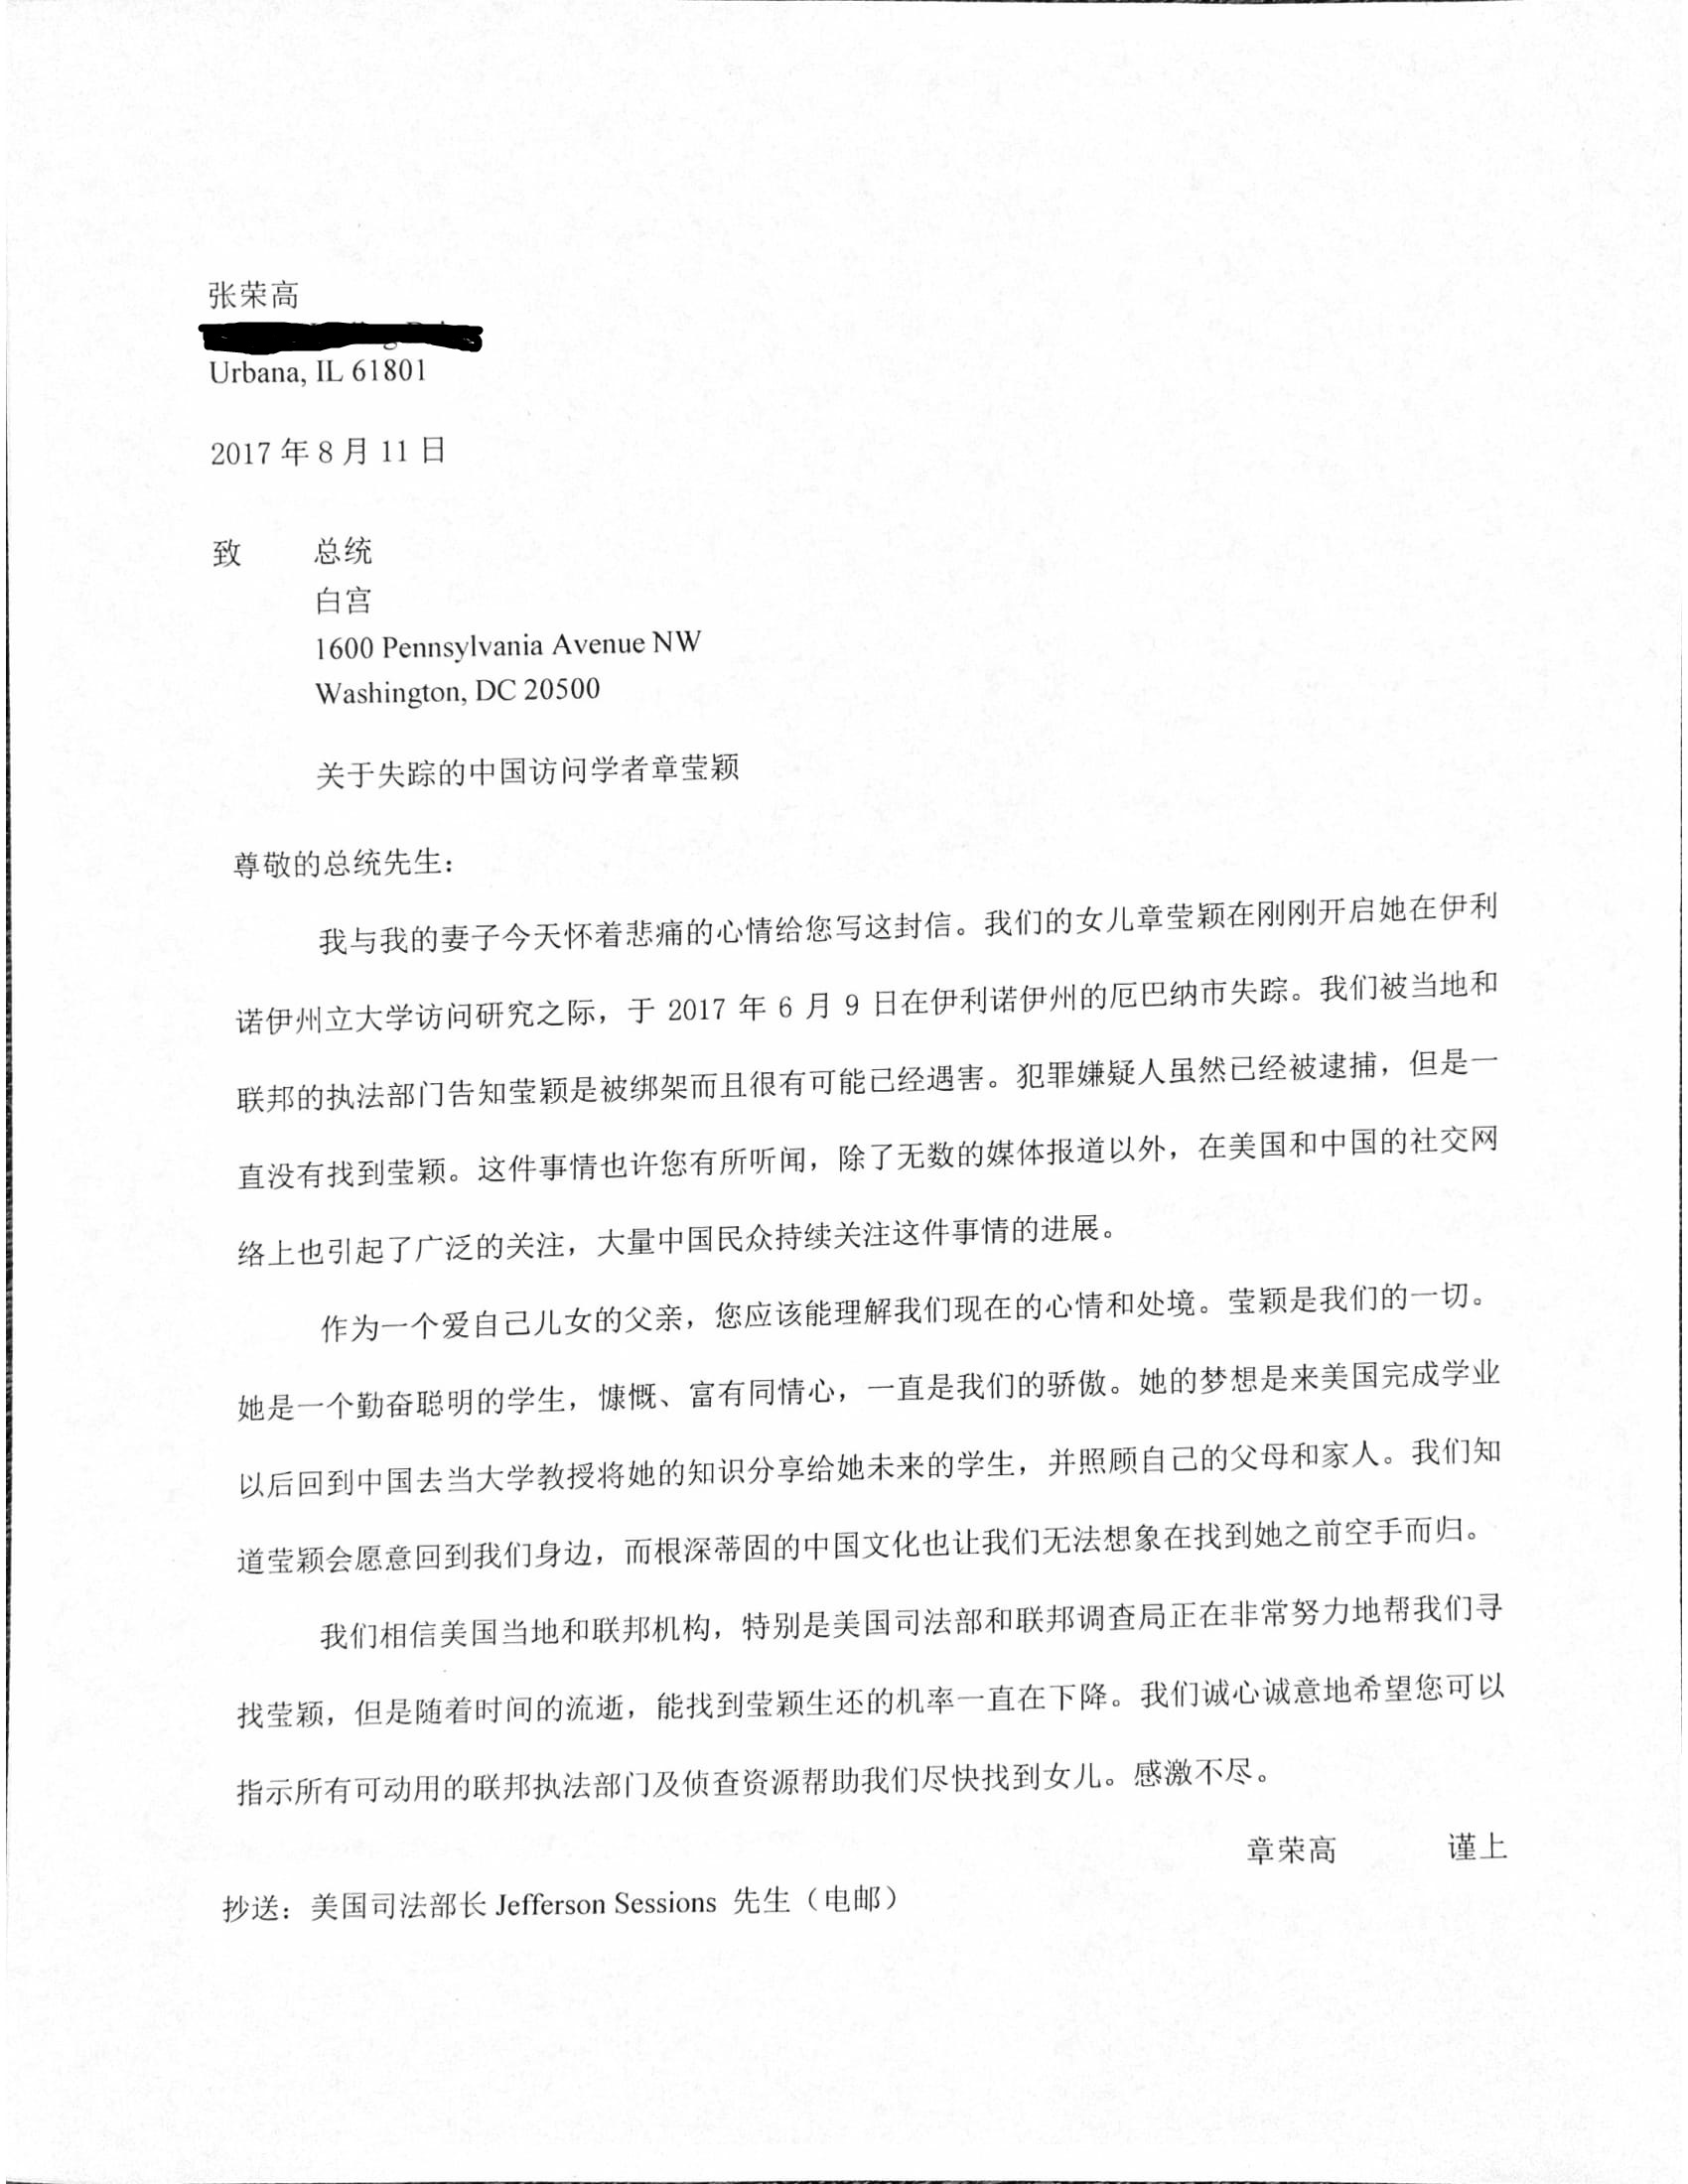 章莹颖家人提交给川普总统的请愿信，图为中文翻译。（章莹颖家人新闻发布会现场提供）